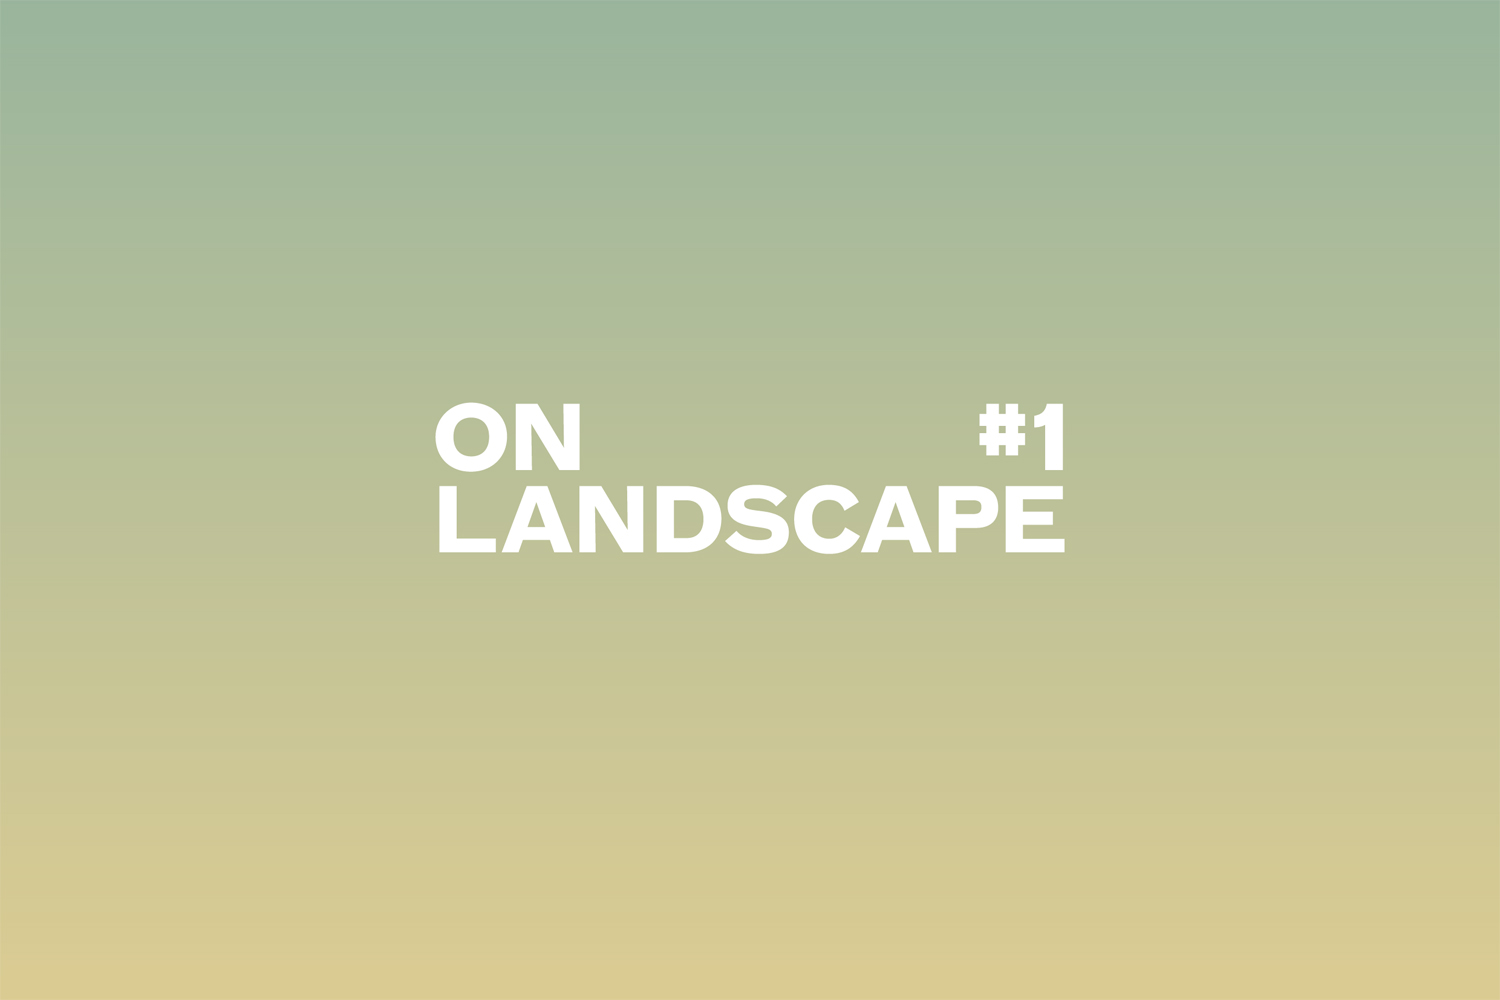 On_Landscape_Slide.jpg